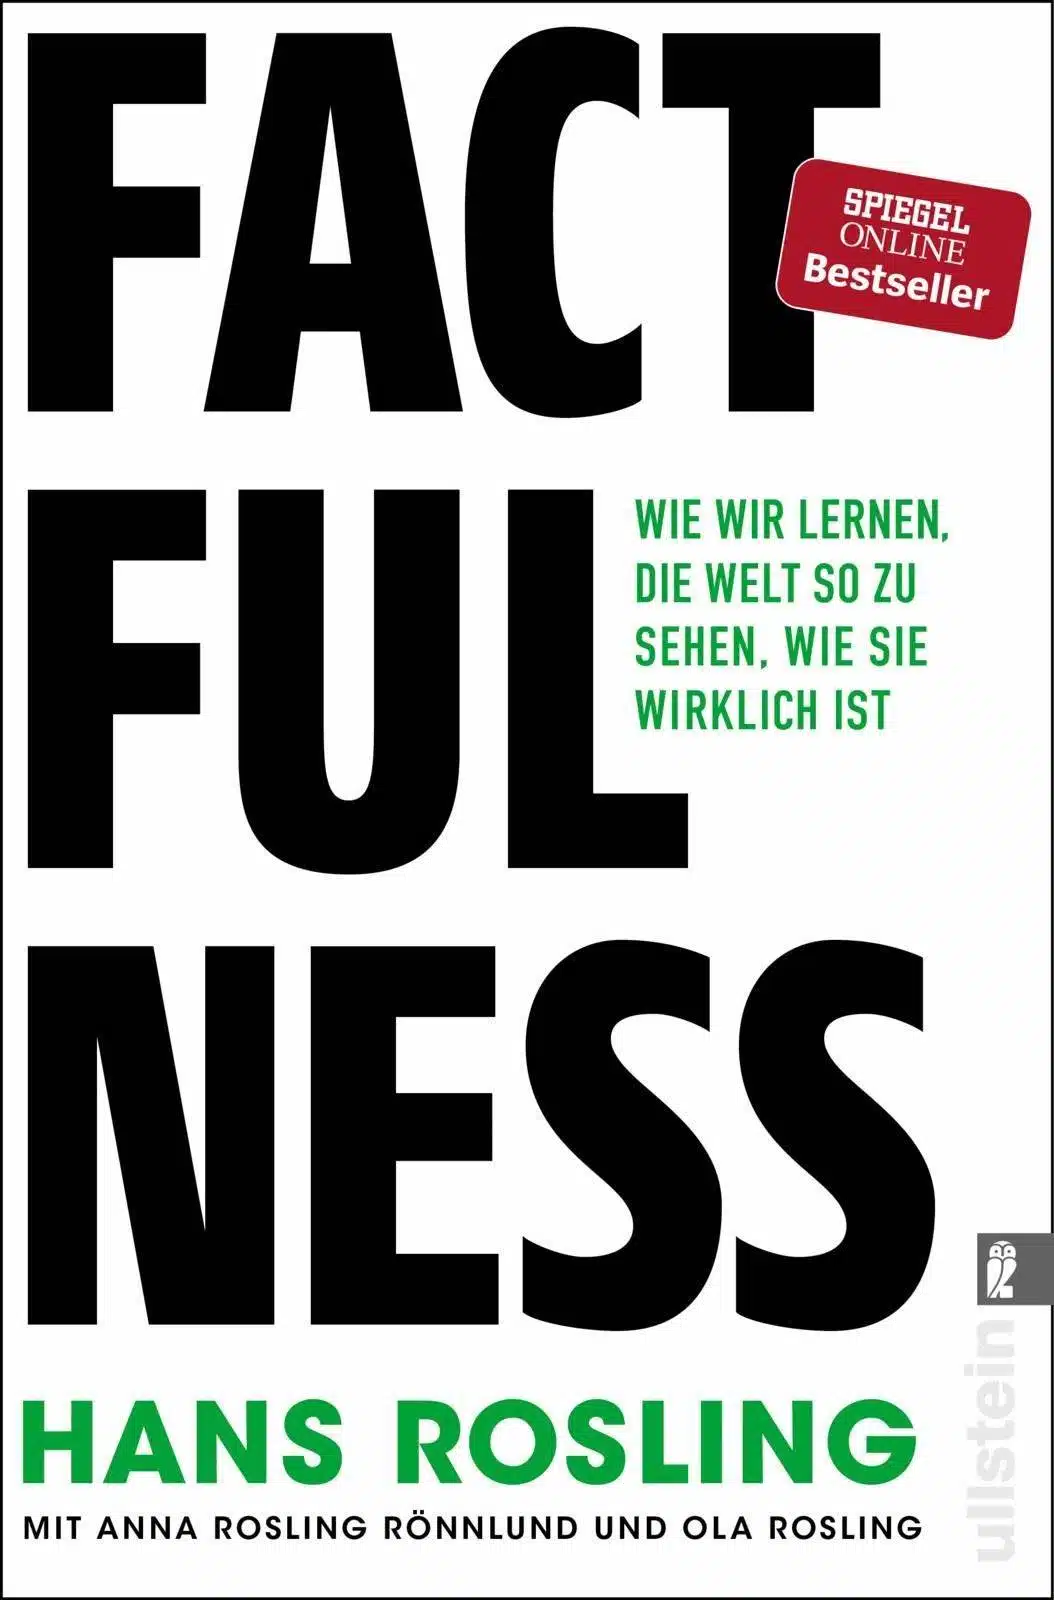 Die besten Bücher zur Persönlichkeitsentwicklung: Hans Rosling - Factfulness - Wie wir lernen, die Welt so zu sehen, wie sie wirklich ist Buchempfehlung